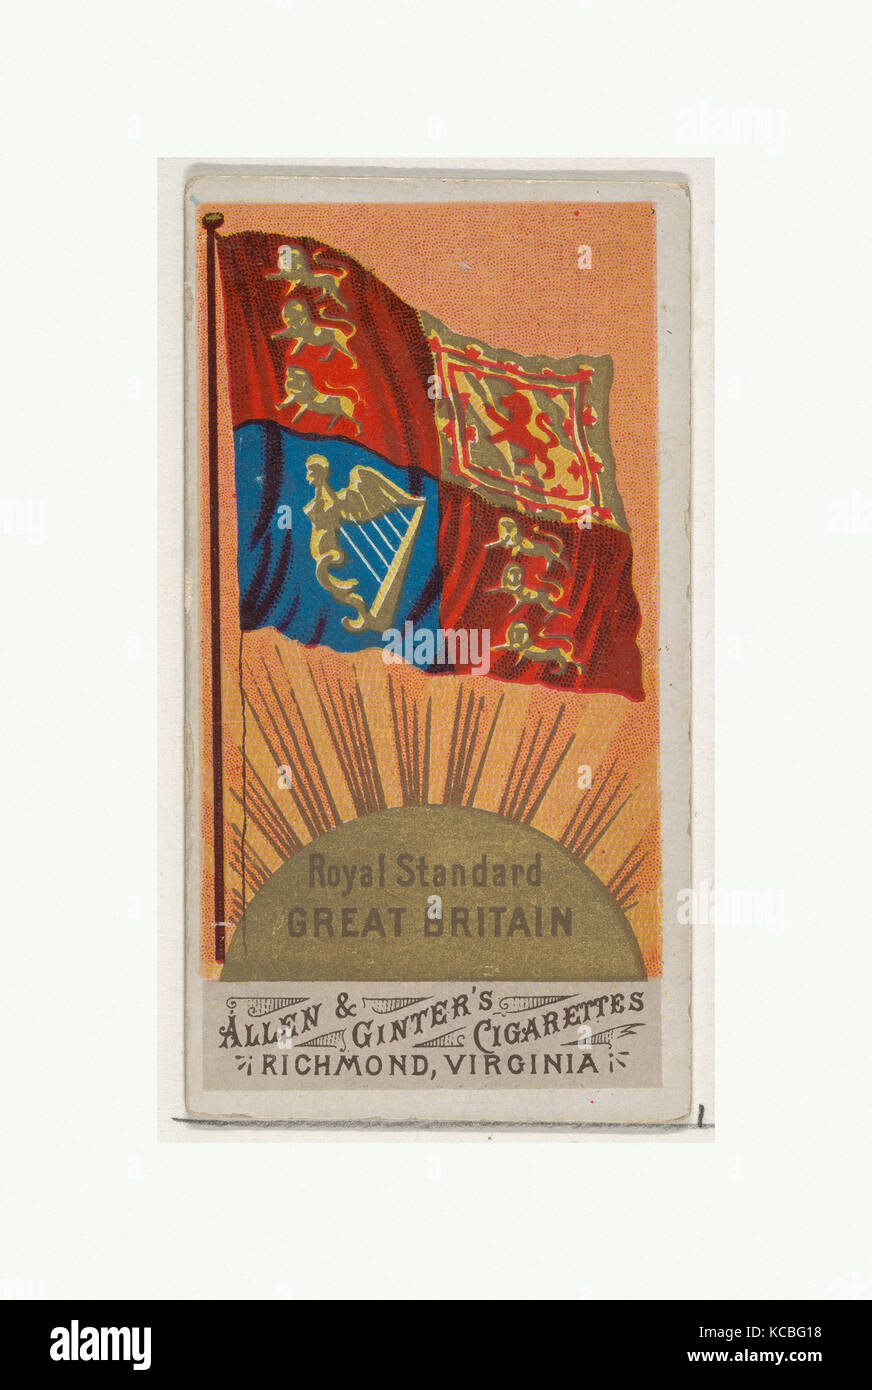 Royal Standard, Grande-Bretagne, de drapeaux de toutes les nations, série 1 (N9) pour les marques de cigarettes Allen & Ginter, 1887 Banque D'Images